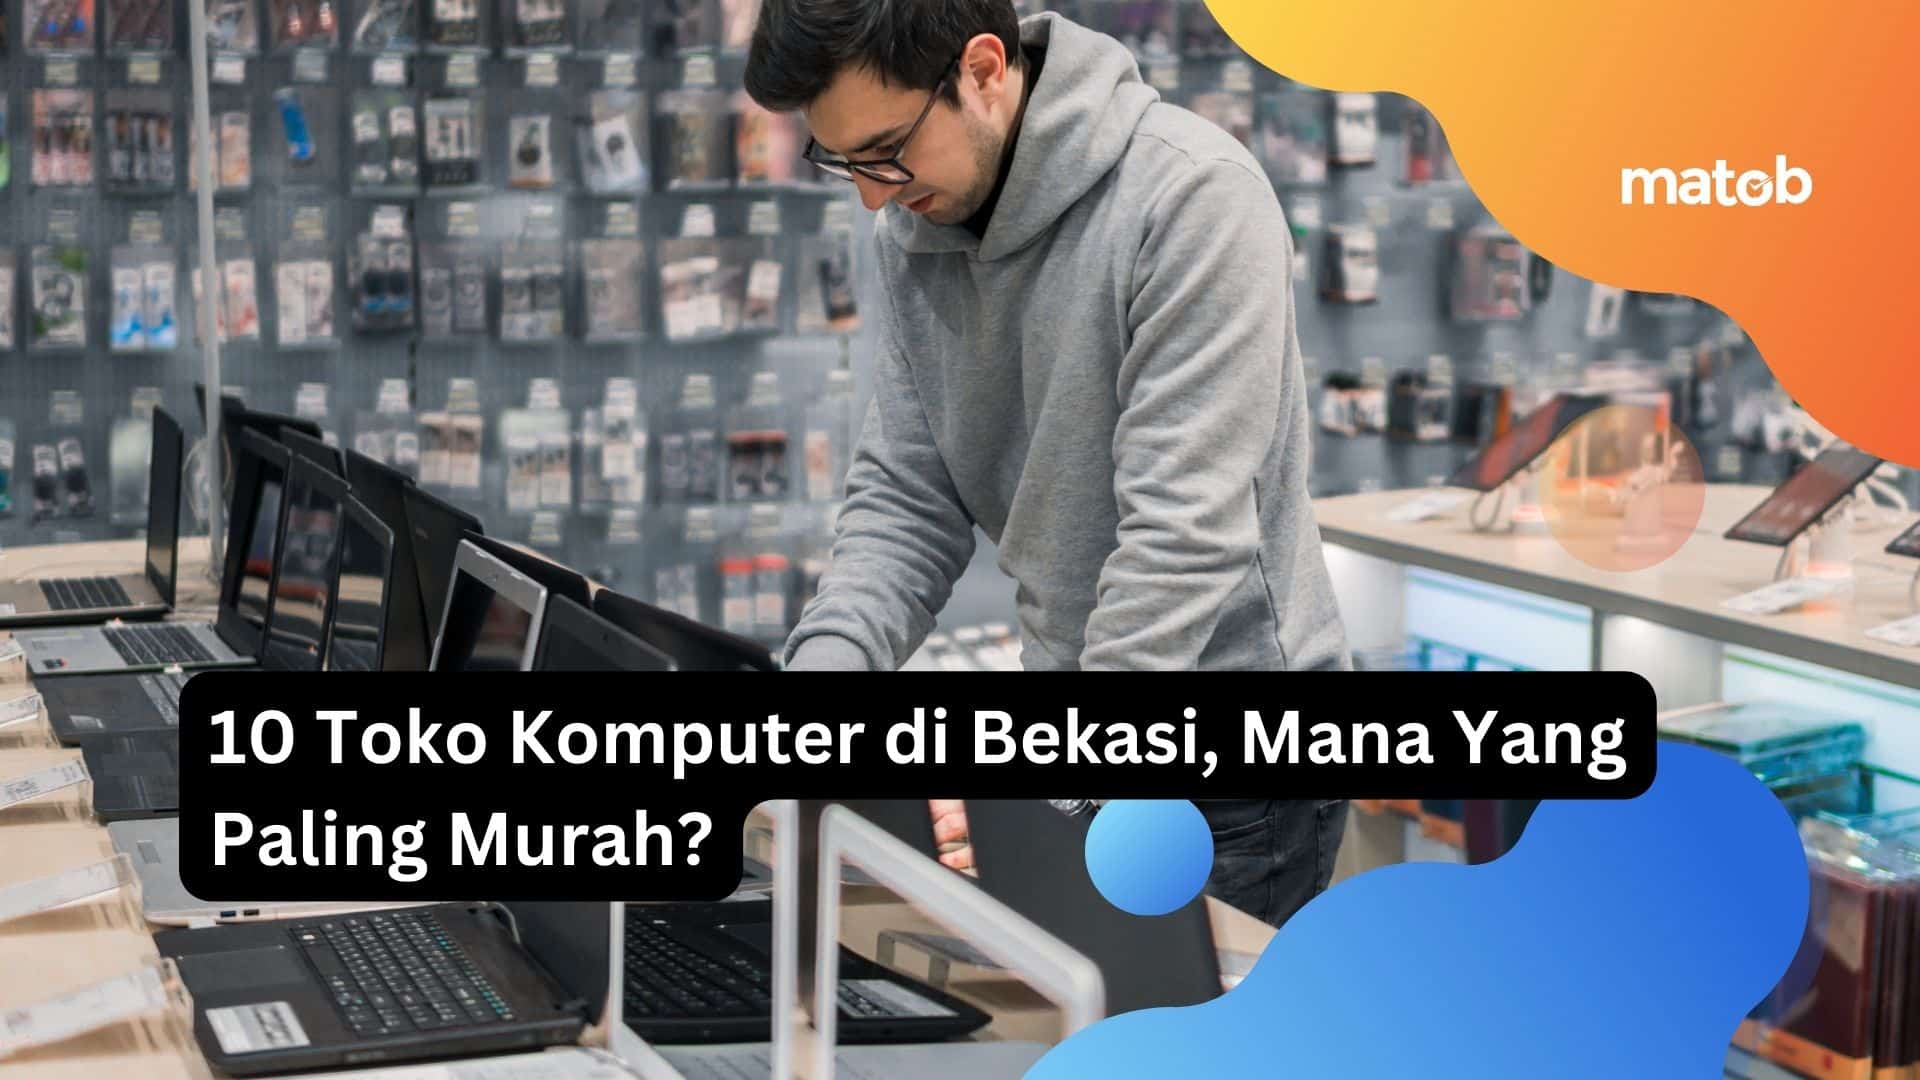 10 Toko Komputer di Bekasi, Mana Yang Paling Murah?